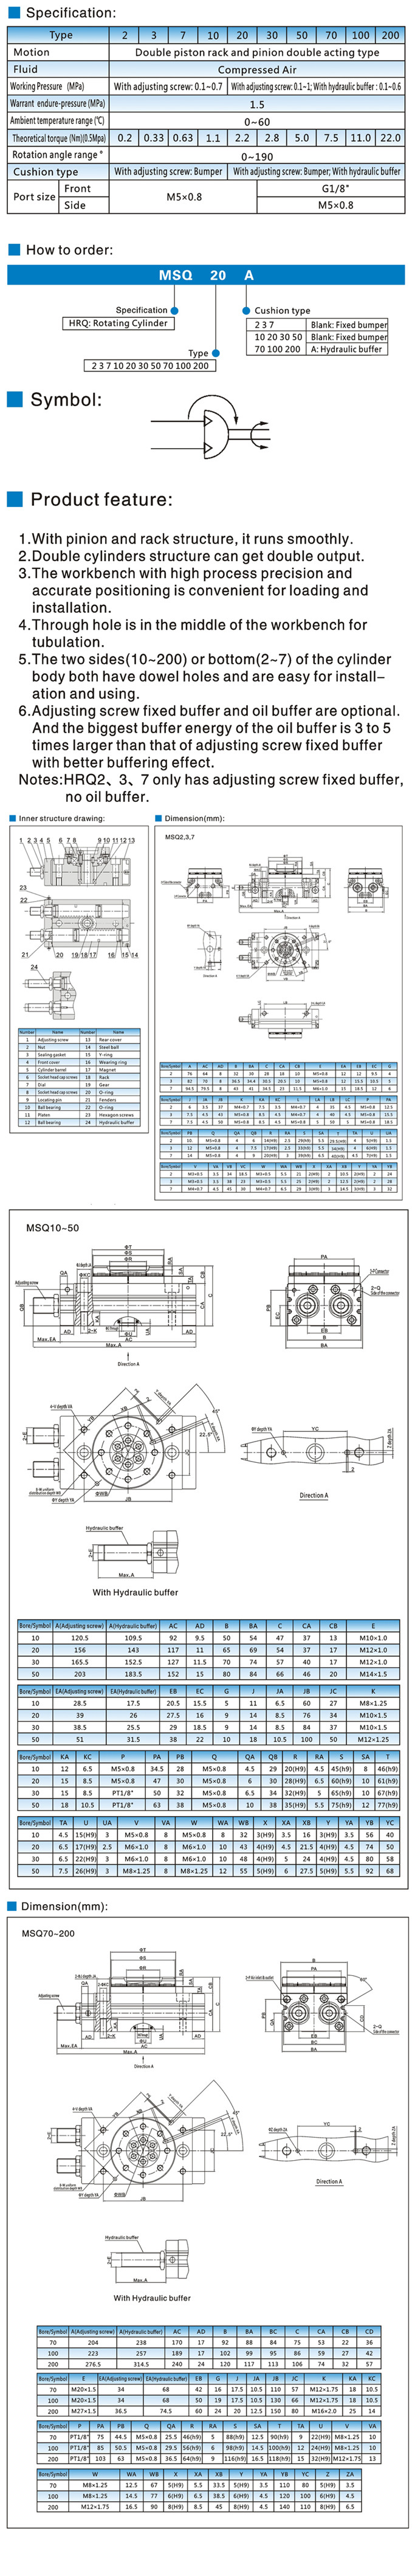 18MSQ series Cylinder.jpg